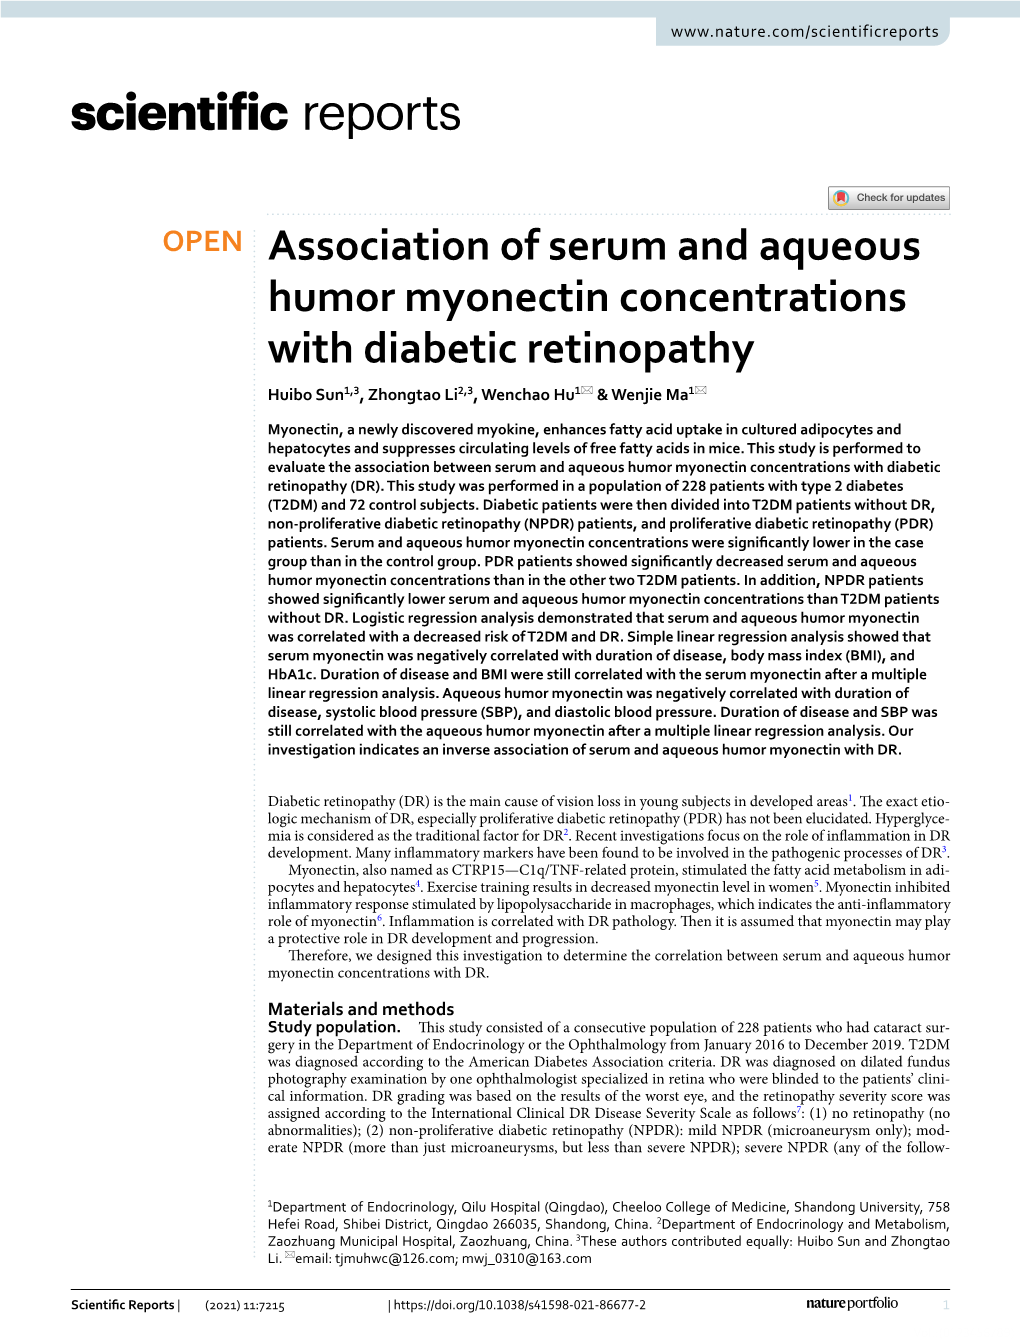 Association of Serum and Aqueous Humor Myonectin Concentrations with Diabetic Retinopathy Huibo Sun1,3, Zhongtao Li2,3, Wenchao Hu1* & Wenjie Ma1*